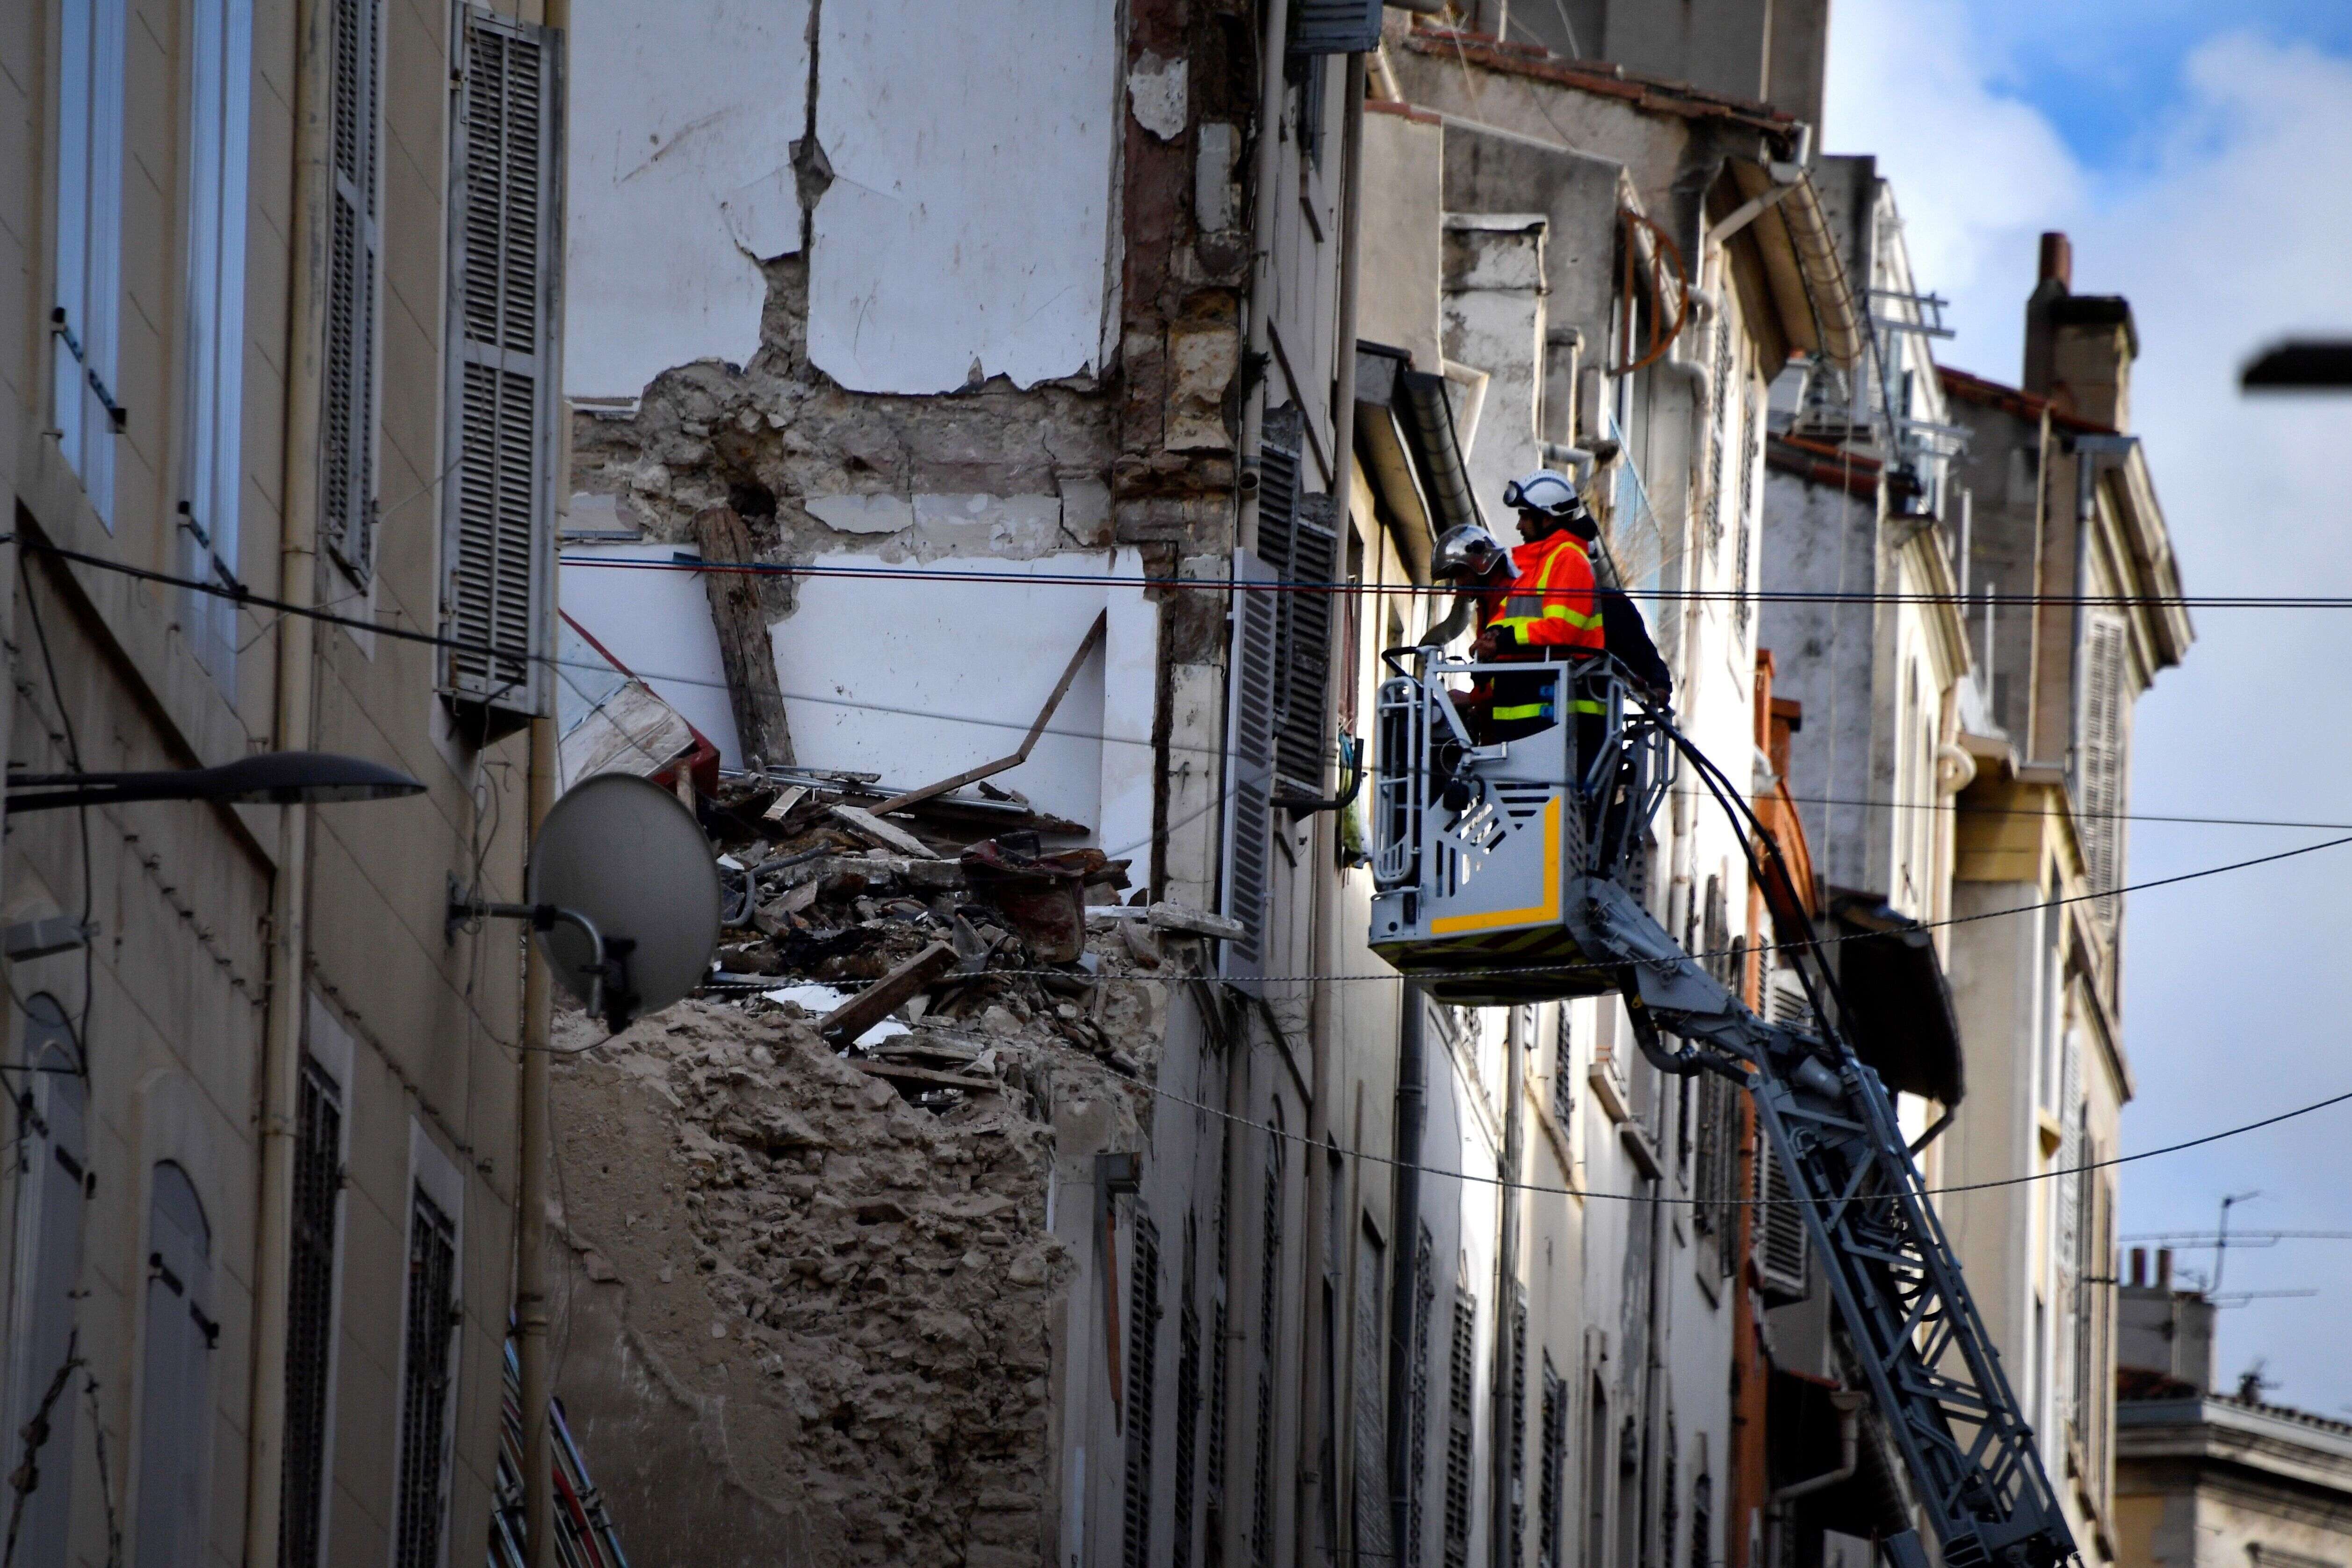 Le 5 novembre 2018, deux immeubles insalubres s'étaient effondrés rue d'Aubagne, à Marseille, provoquant la mort de huit personnes.